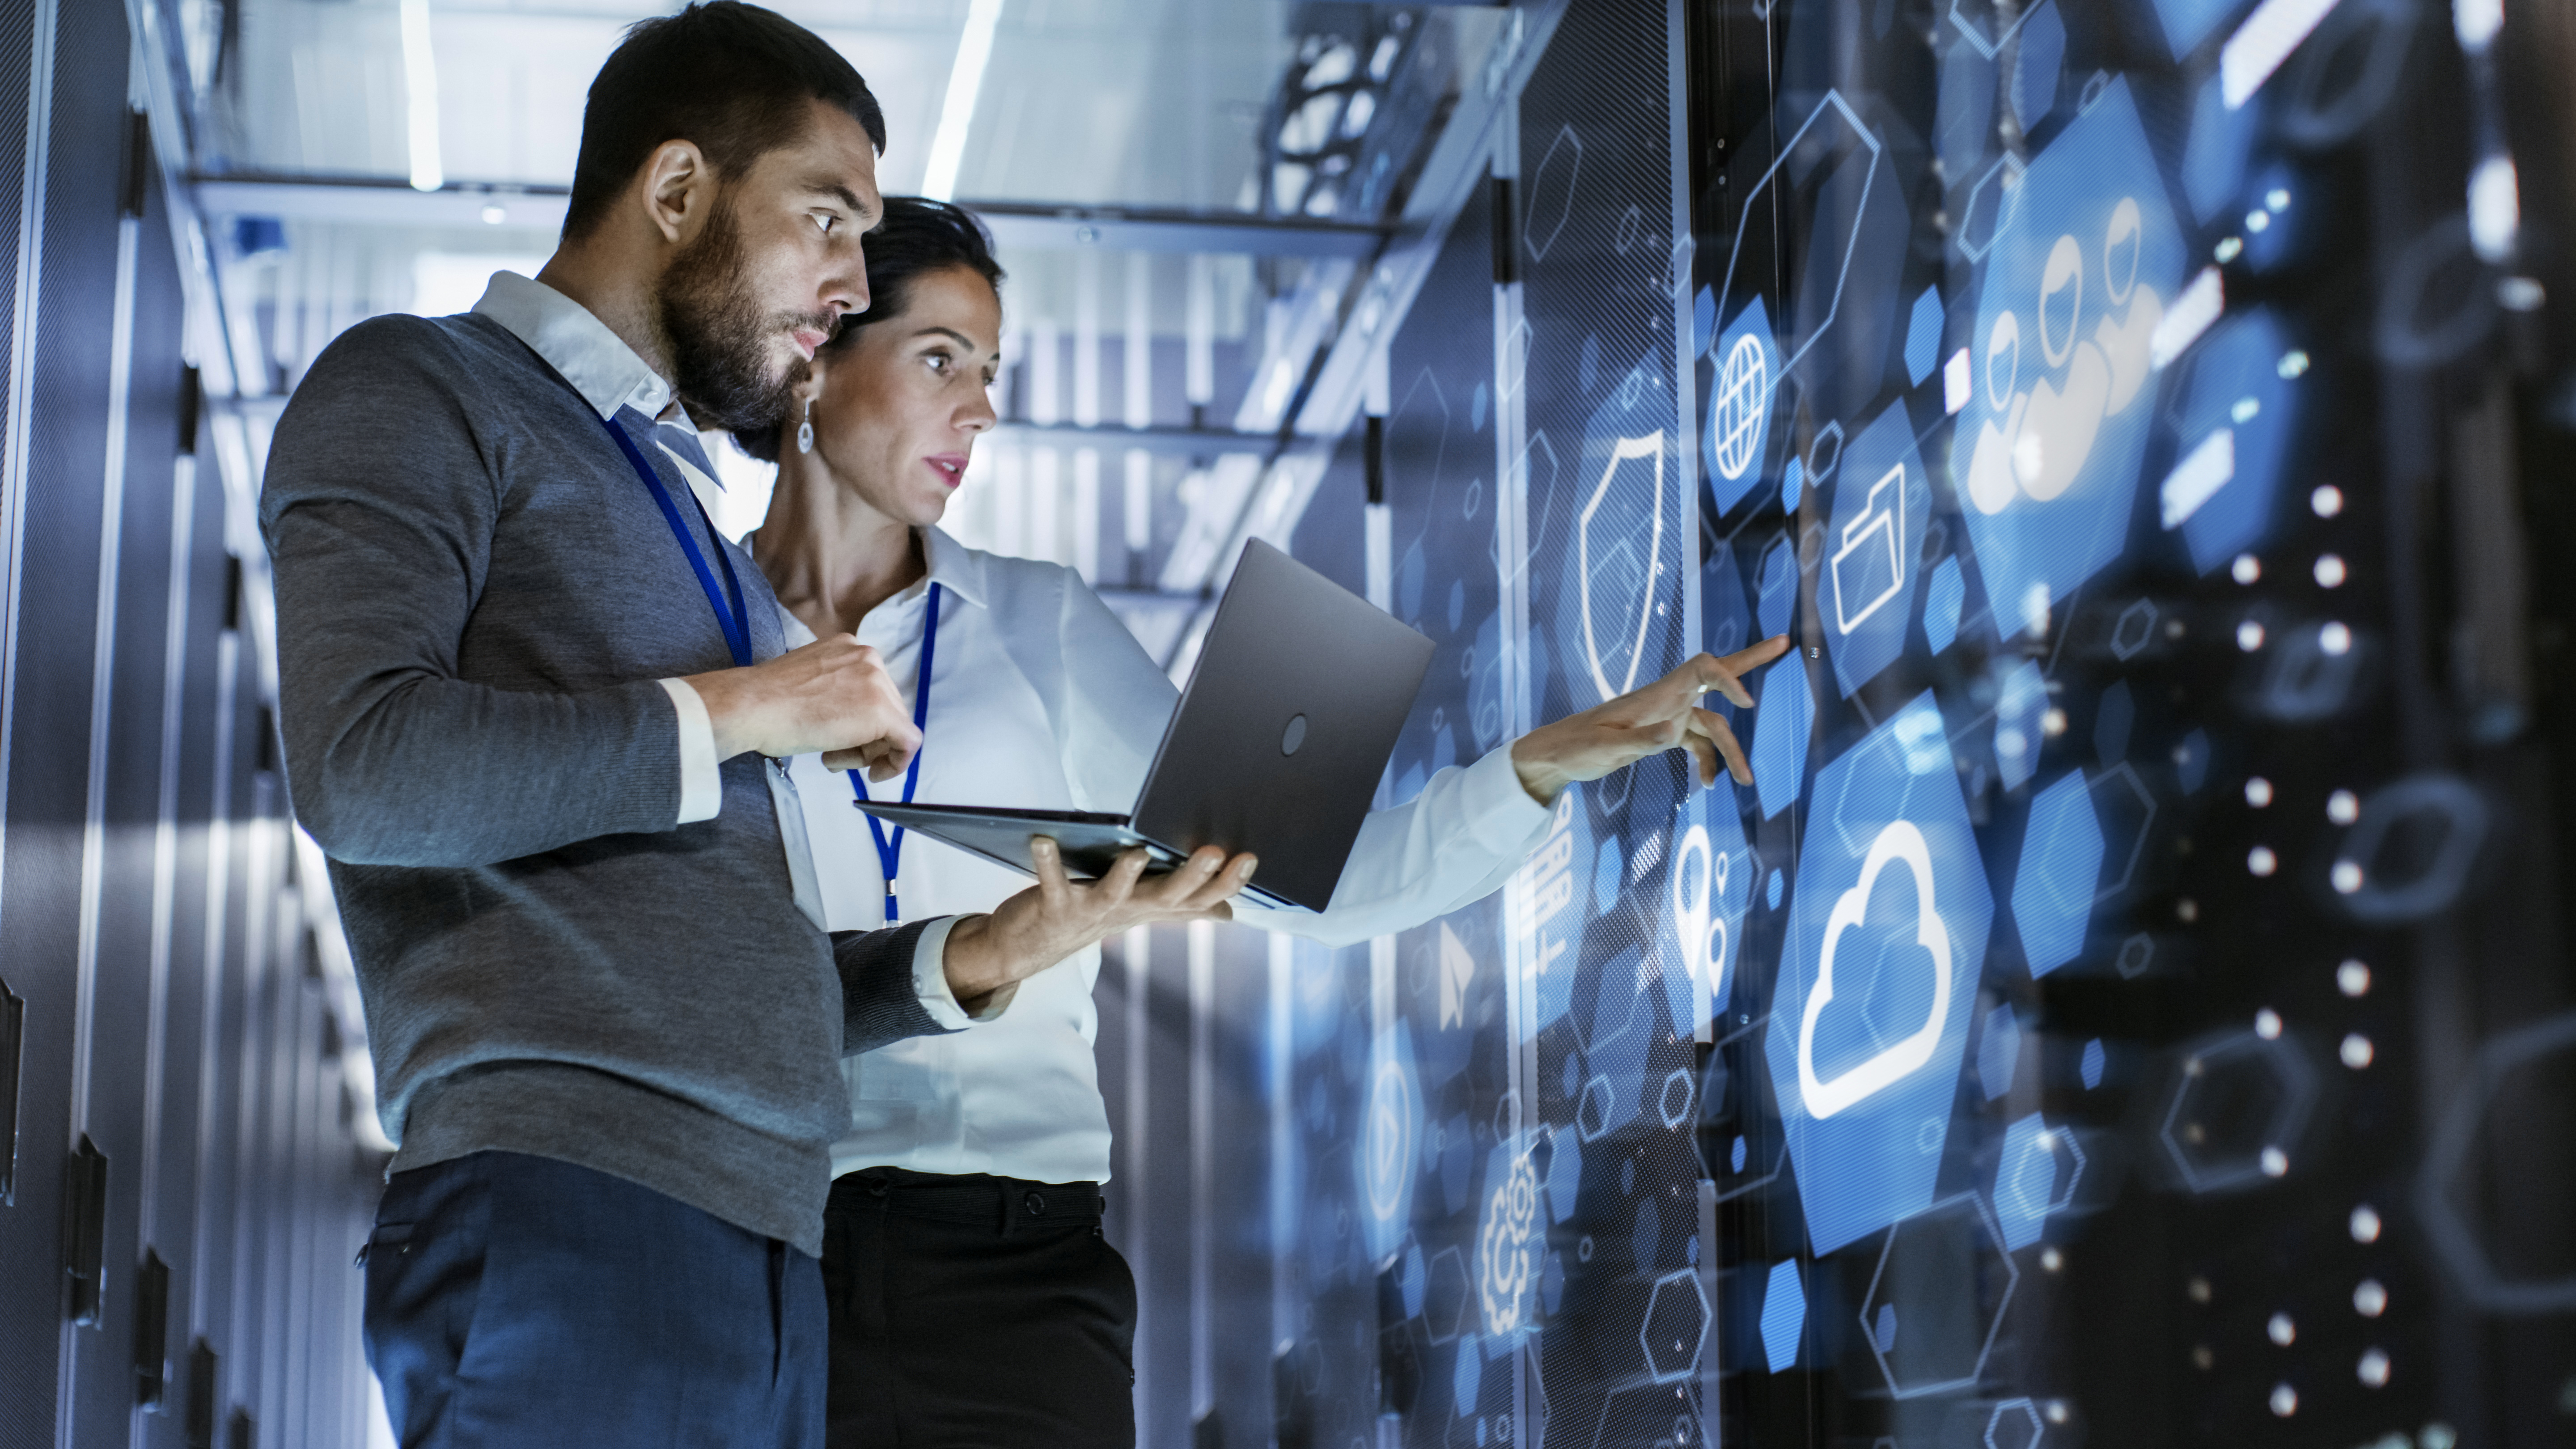 SAP przedstawia rozwiązanie SAP Datasphere oraz nawiązuje partnerstwo z Collibra, Confluent, Databricks i DataRobot, aby uprościć środowisko danych klientów